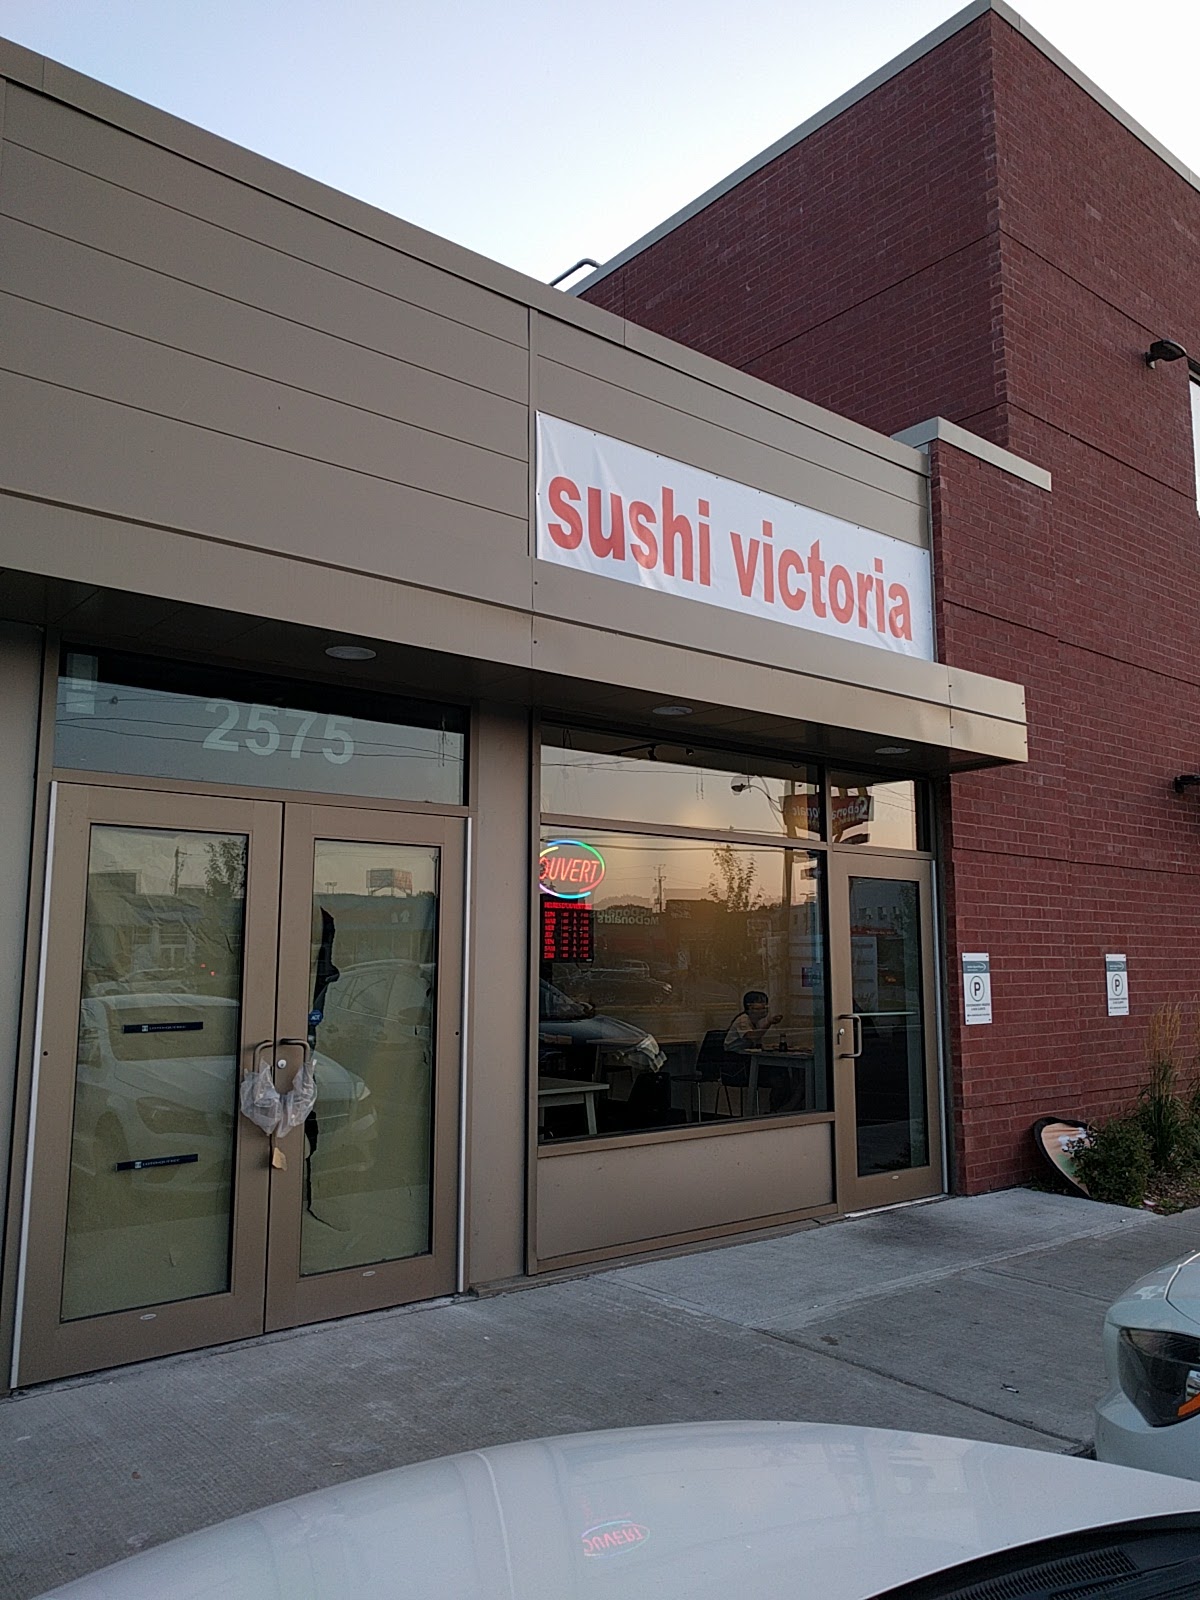 Sushi Victoria